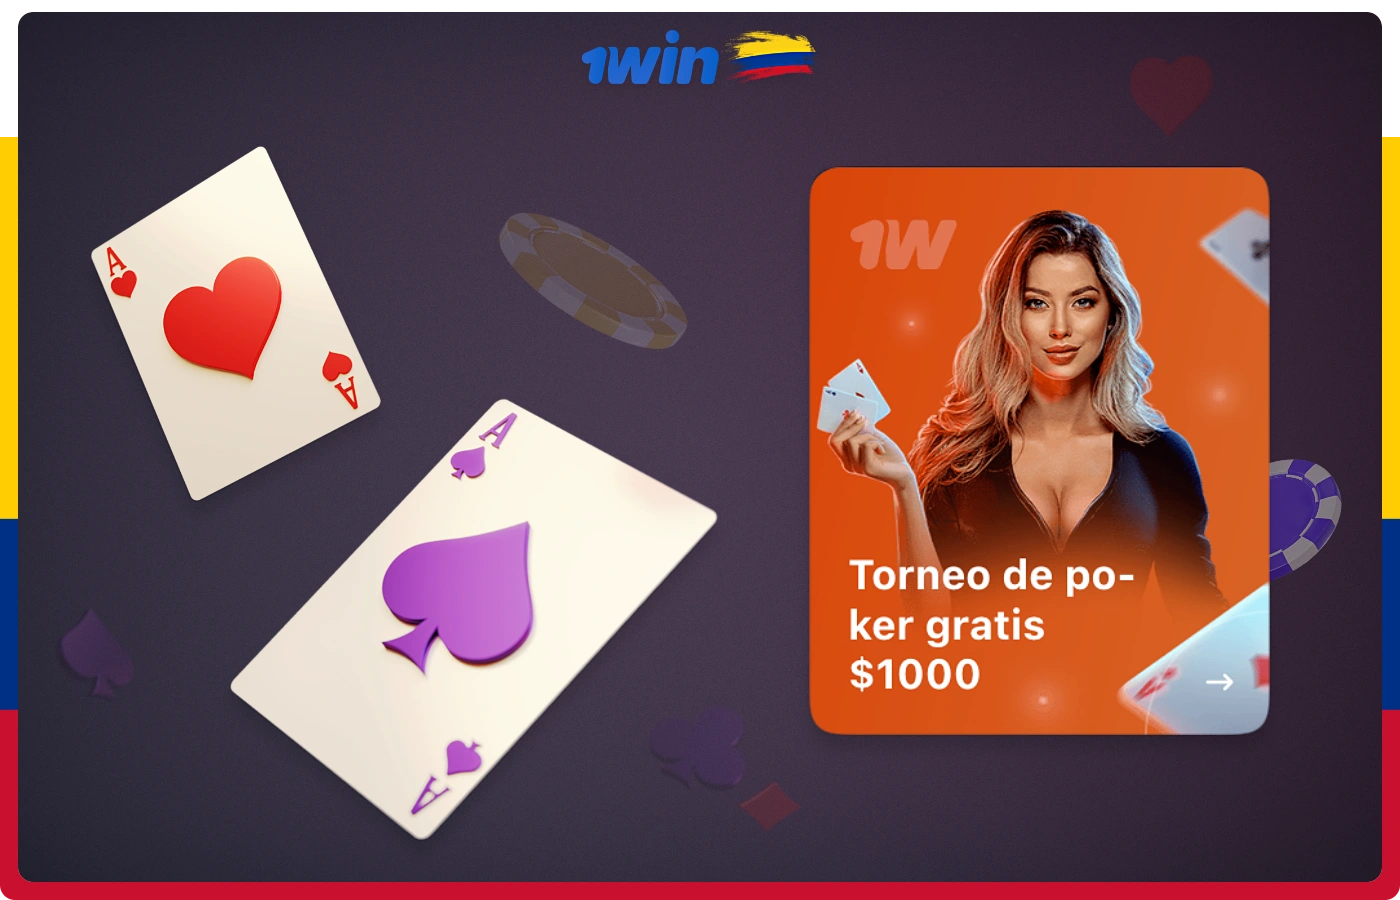 Torneos de poker gratis en 1win para usuarios colombianos